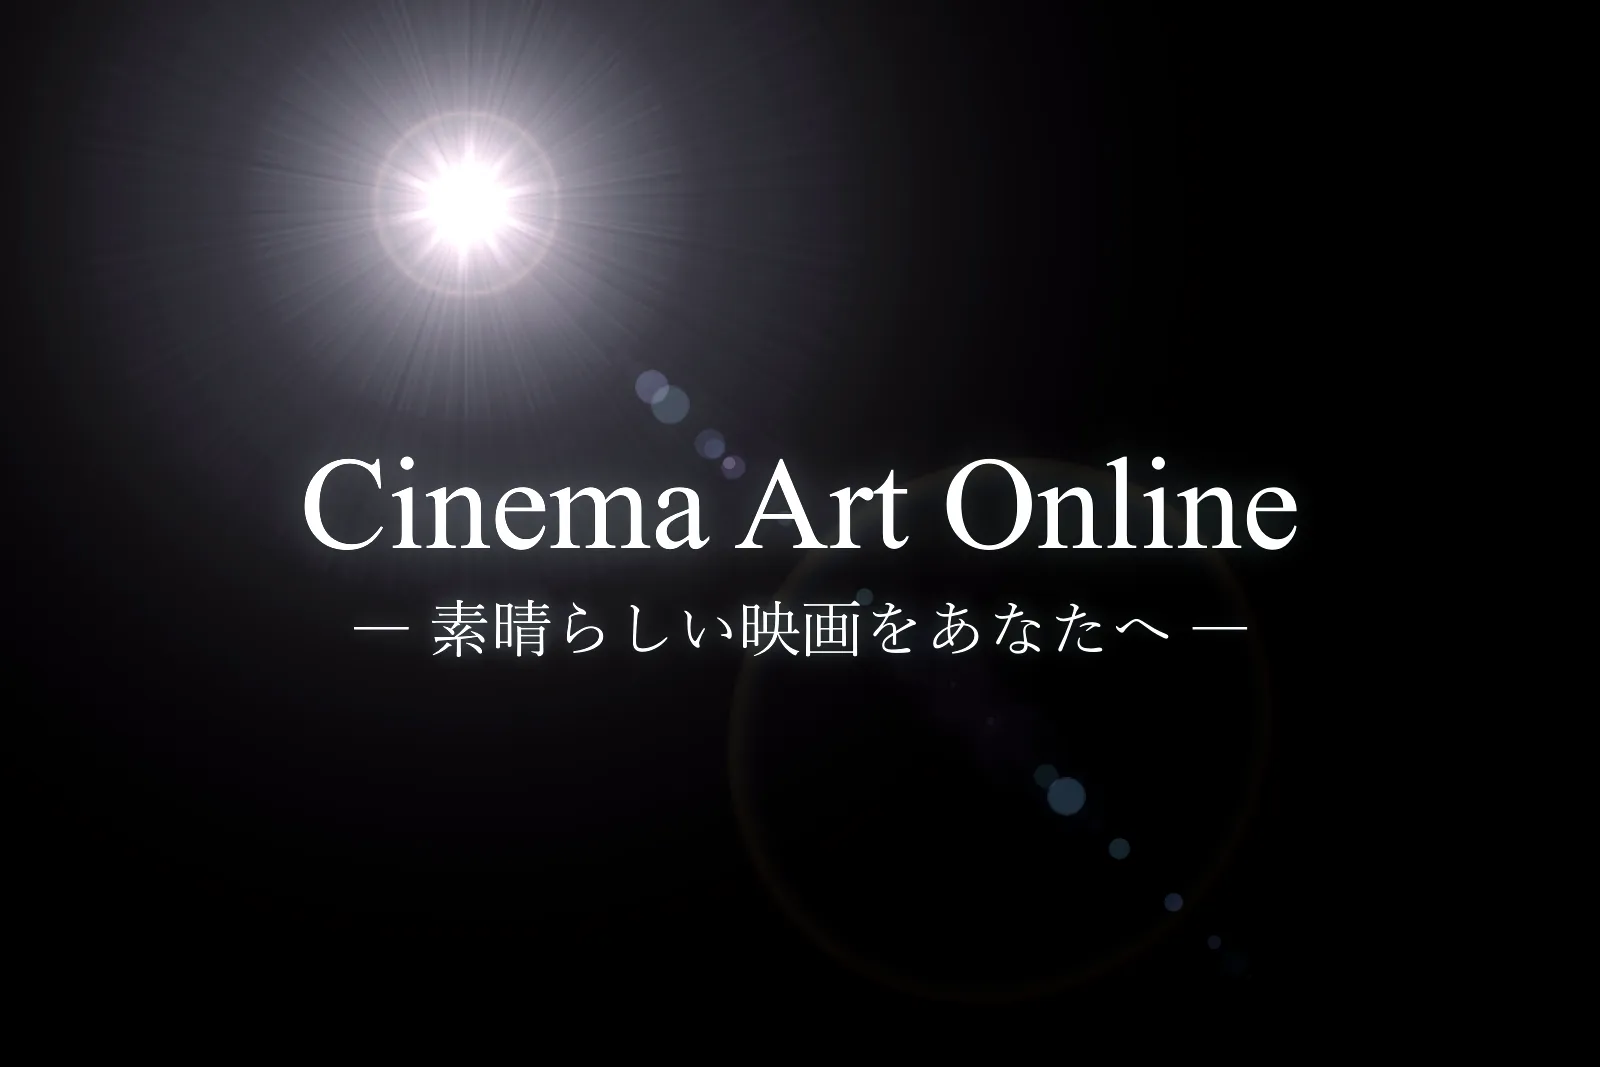 【CAO】Cinema Art Online (シネマアートオンライン) — 素晴らしい映画をあなたへ —